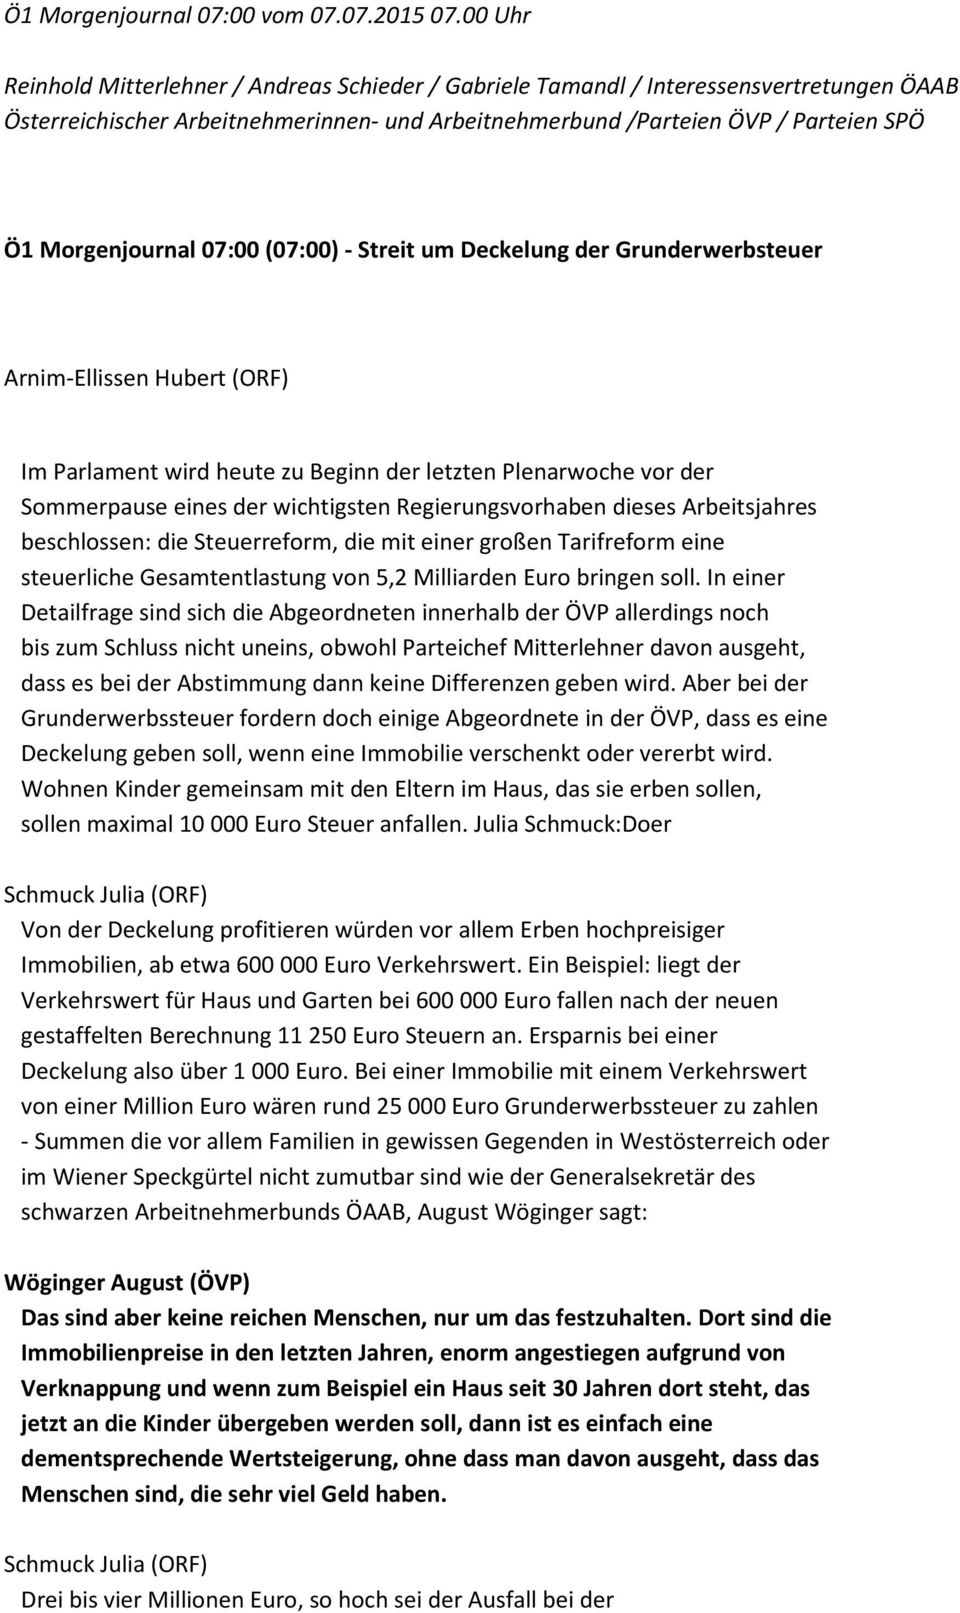 Morgenjournal 07:00 (07:00) - Streit um Deckelung der Grunderwerbsteuer Arnim-Ellissen Hubert (ORF) Im Parlament wird heute zu Beginn der letzten Plenarwoche vor der Sommerpause eines der wichtigsten